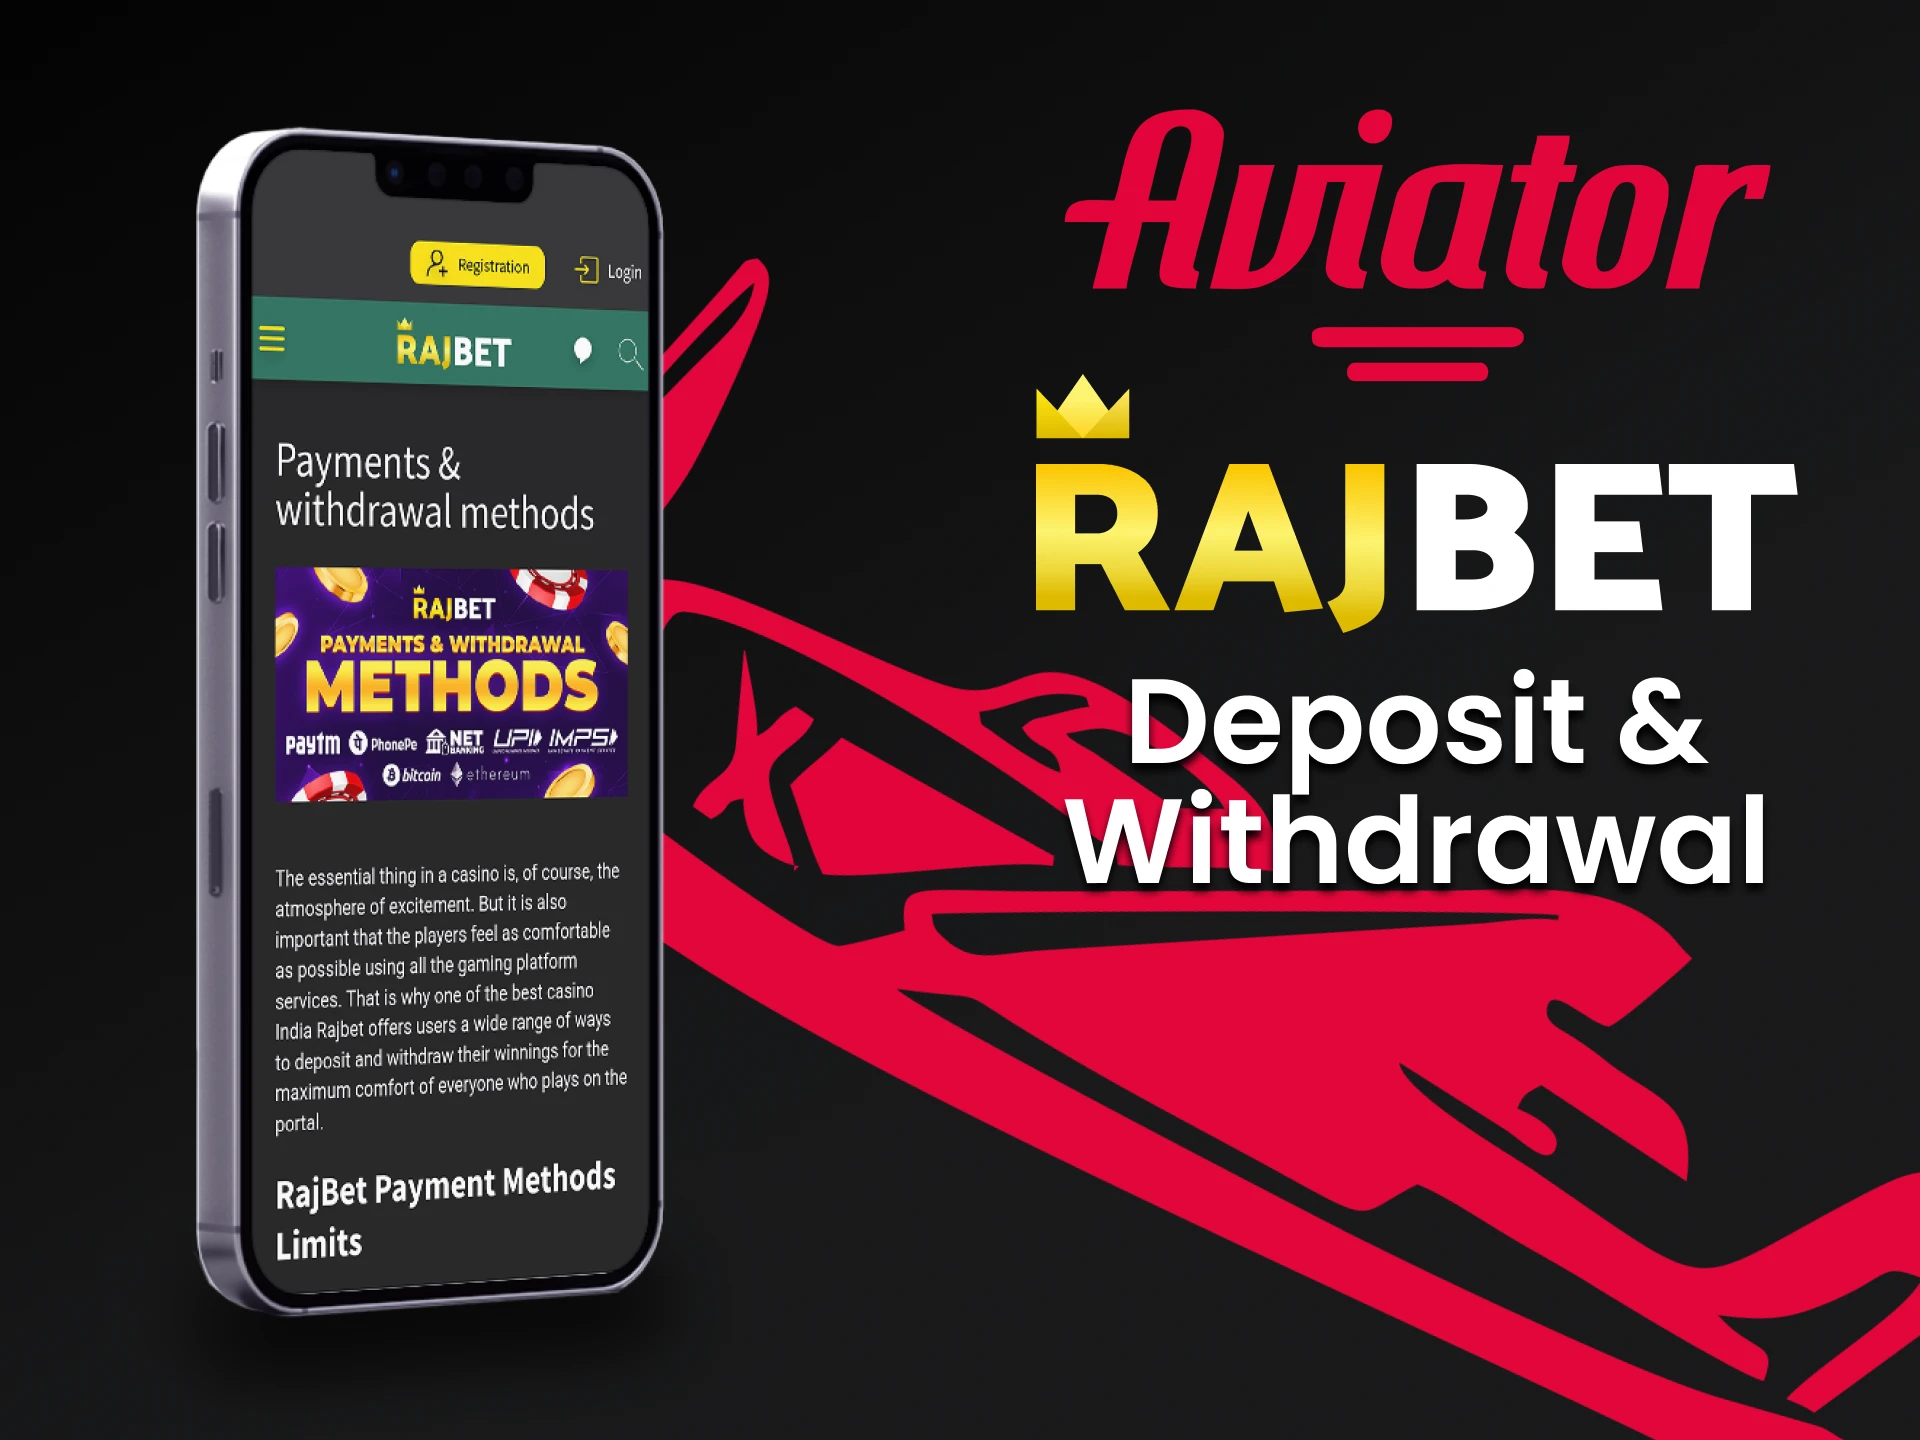 Deposite e retire dinheiro usando o aplicativo Rajbet.